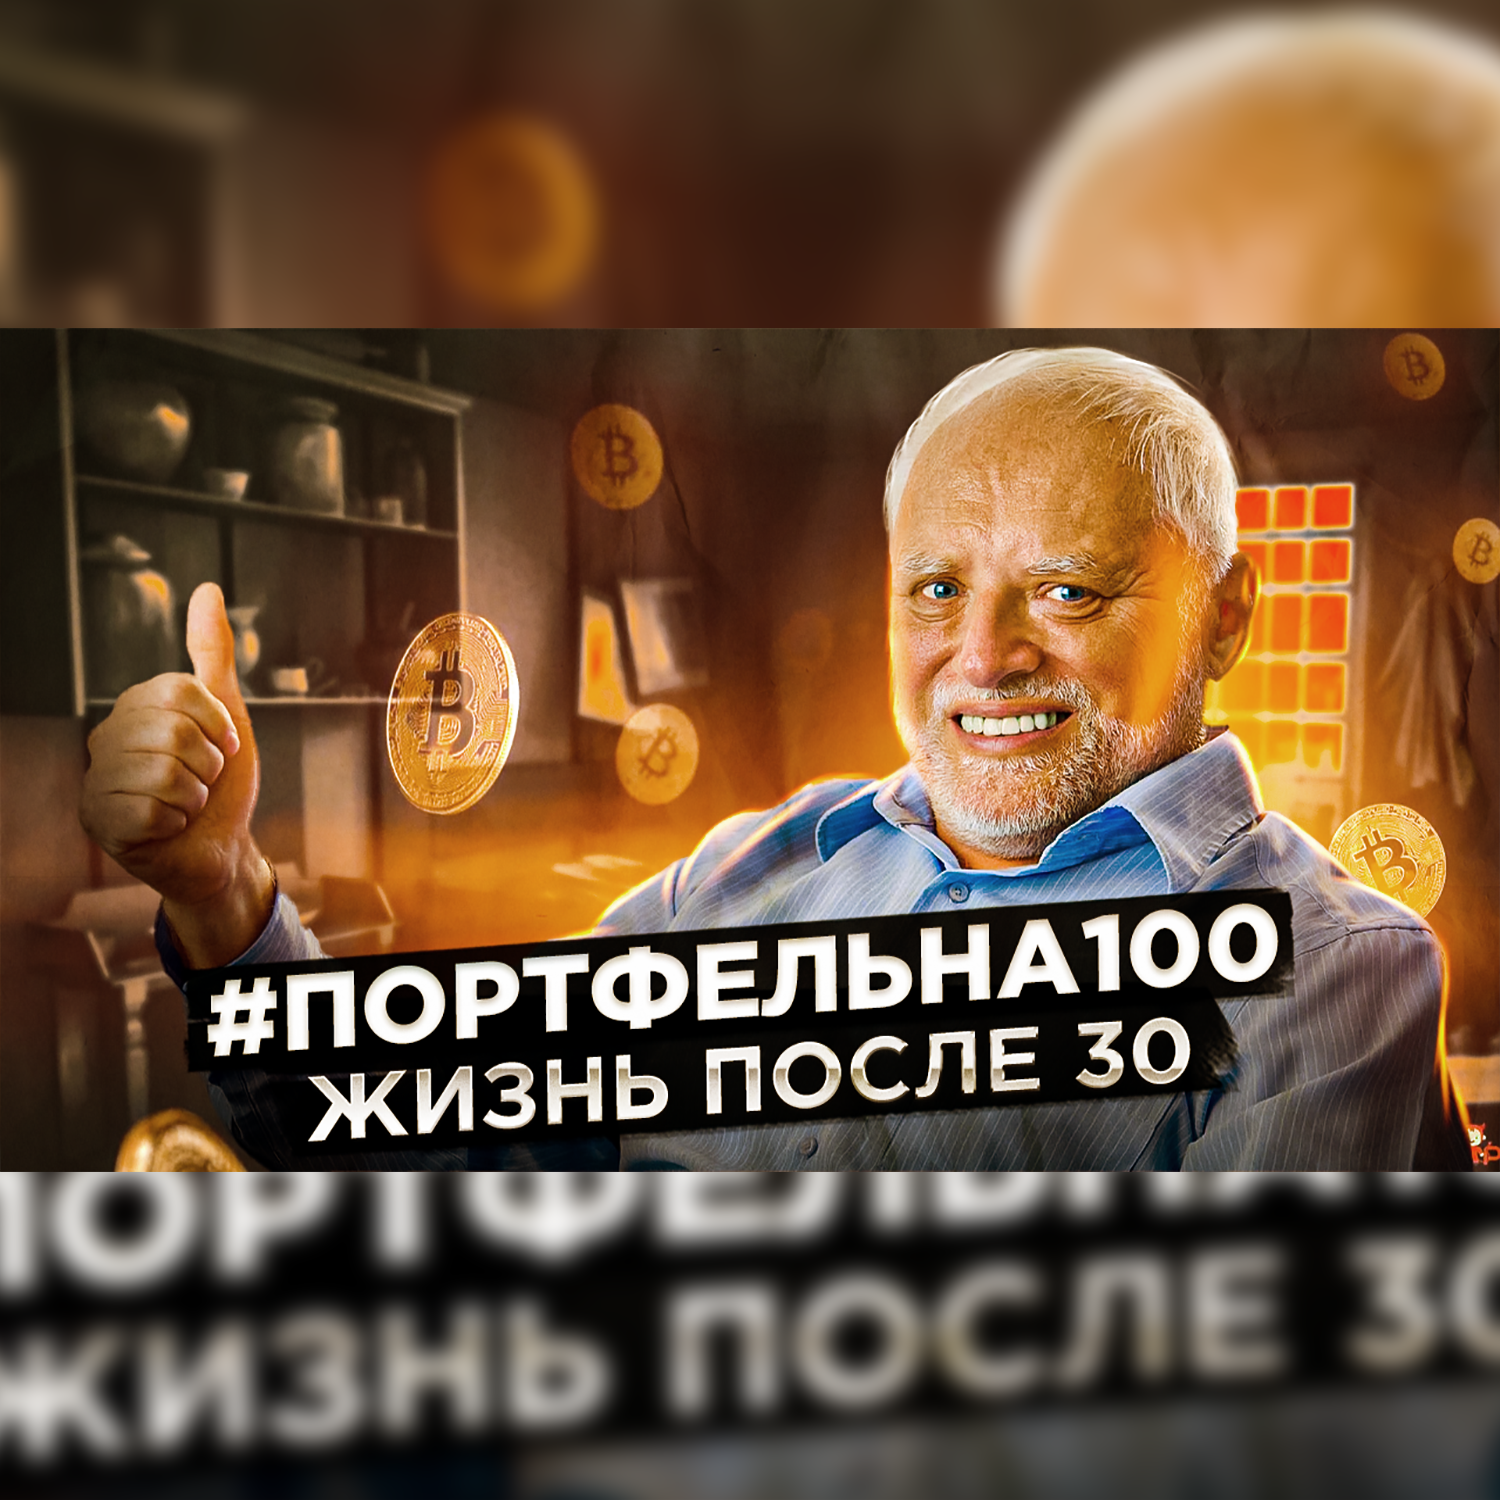 Жизнь после 30 #Портфельна100 podcast poster